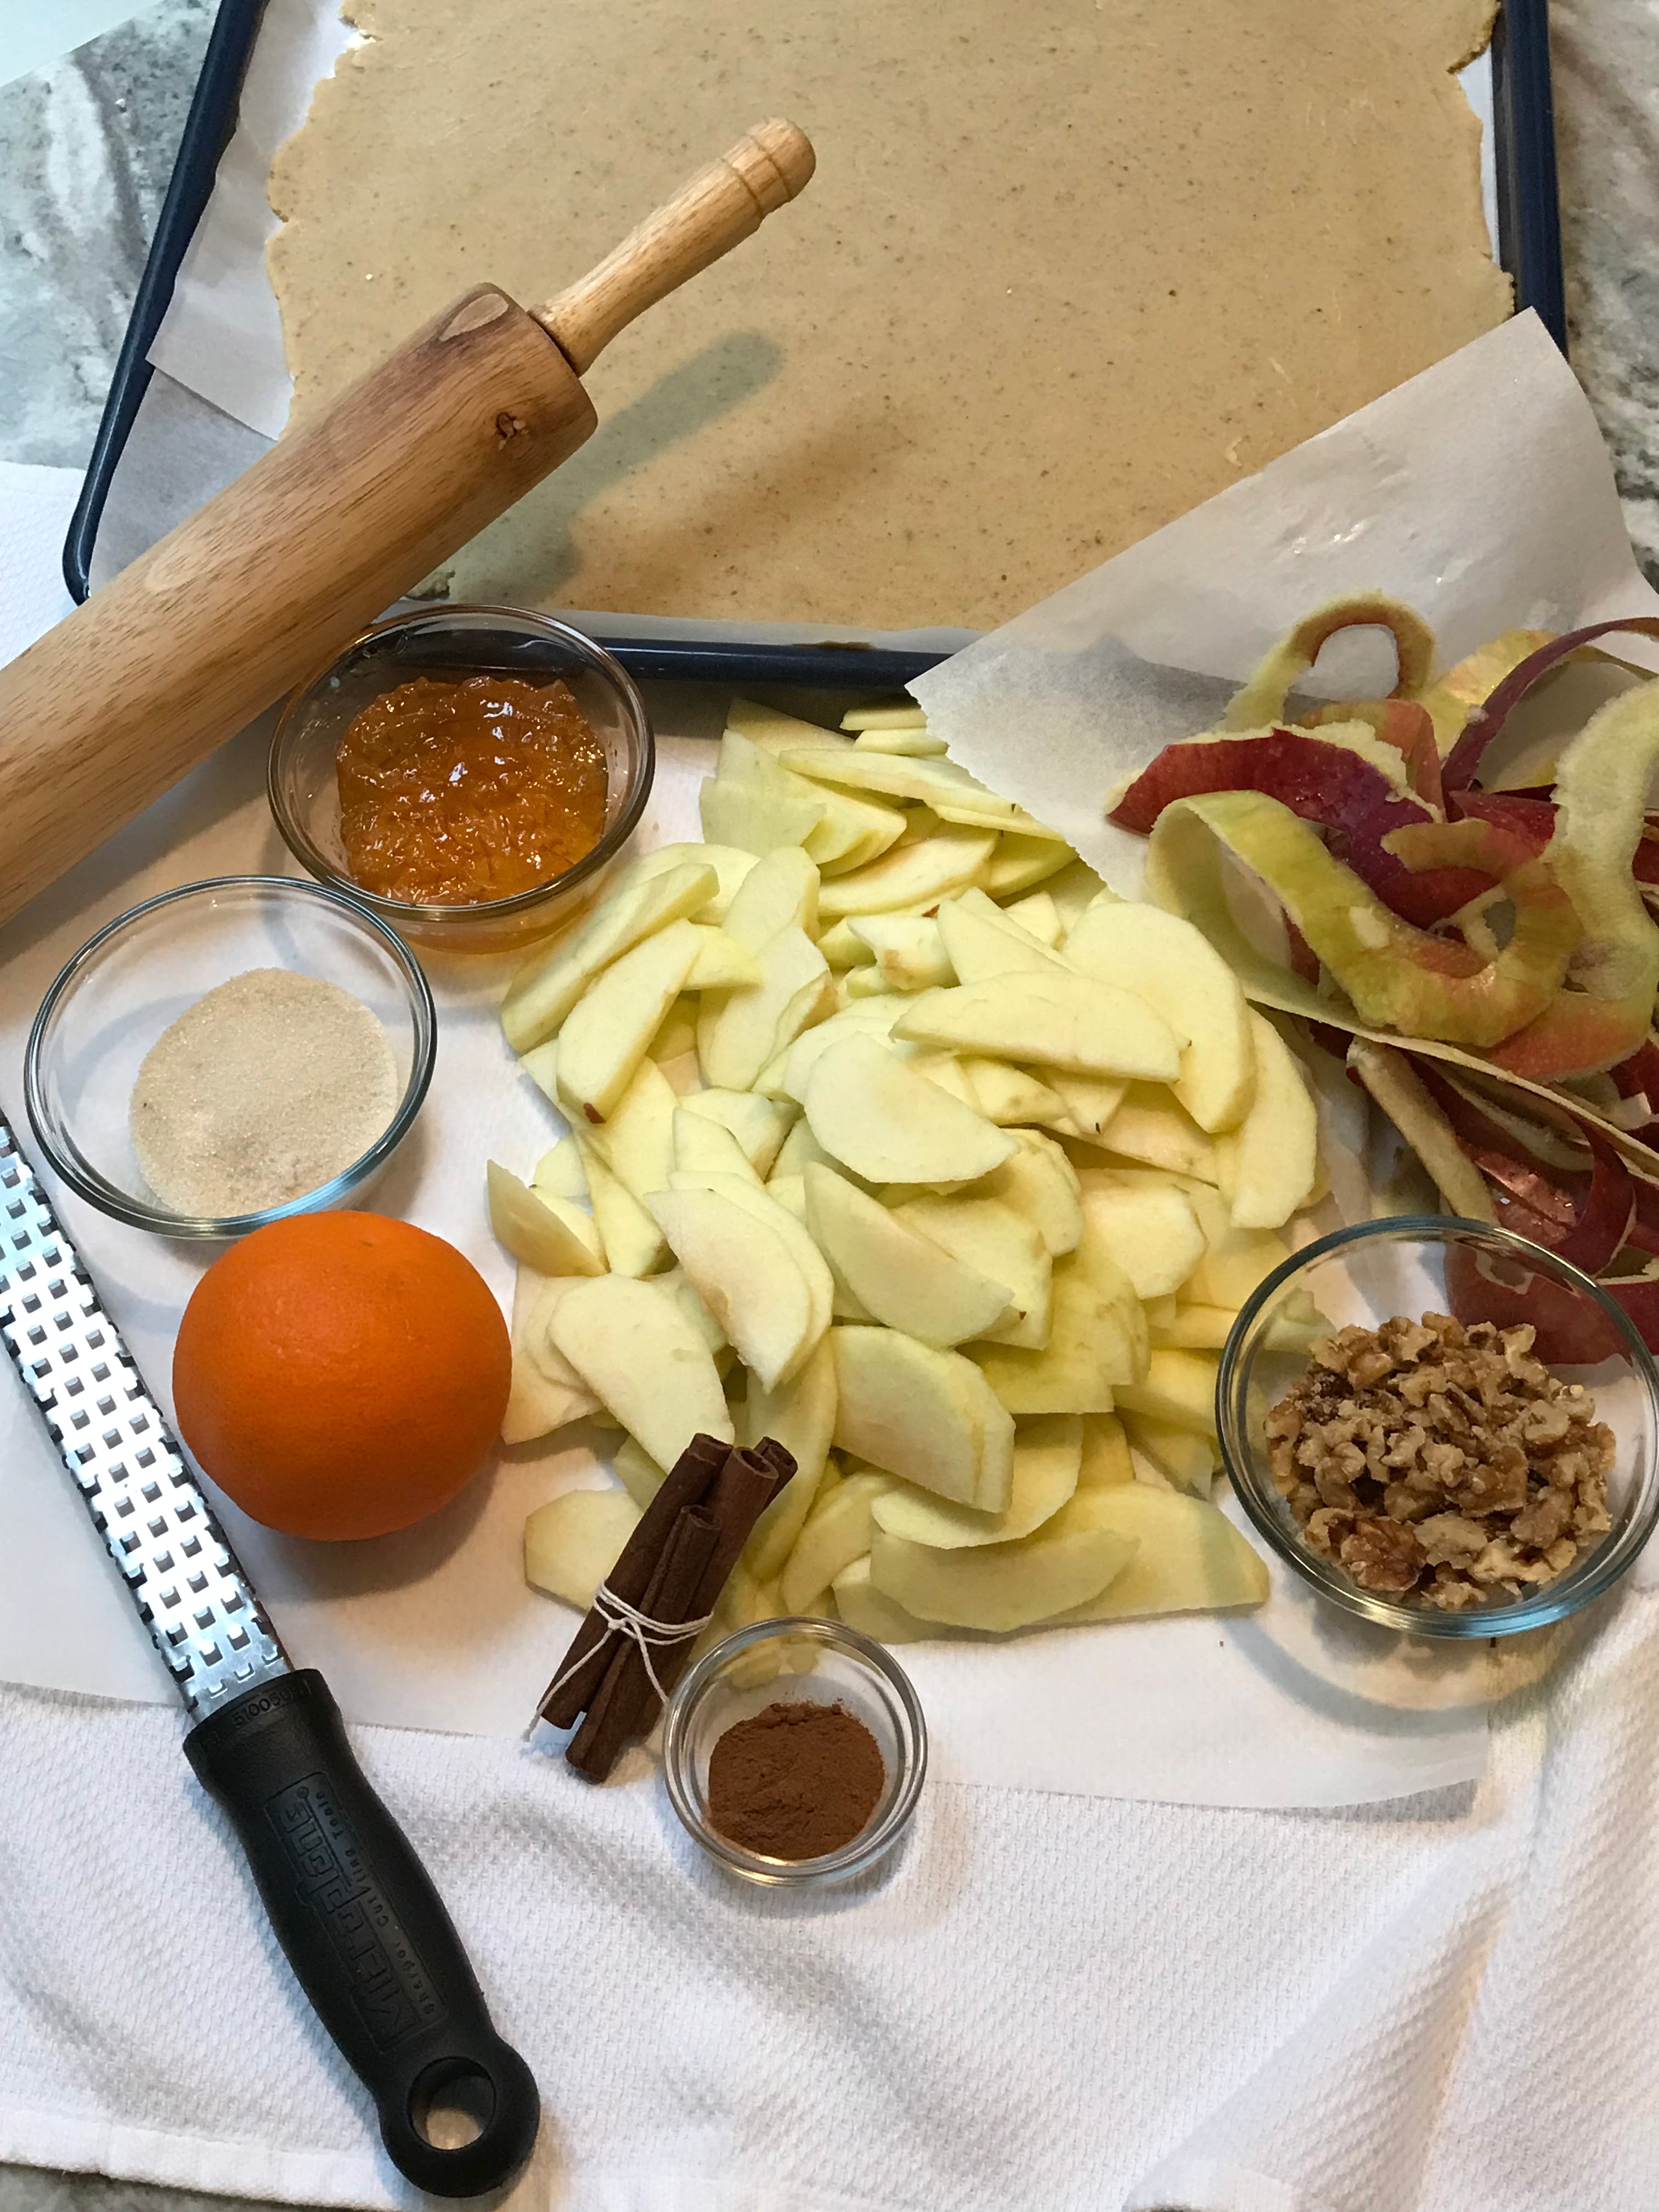 Apples and Orange Galette Ingredients